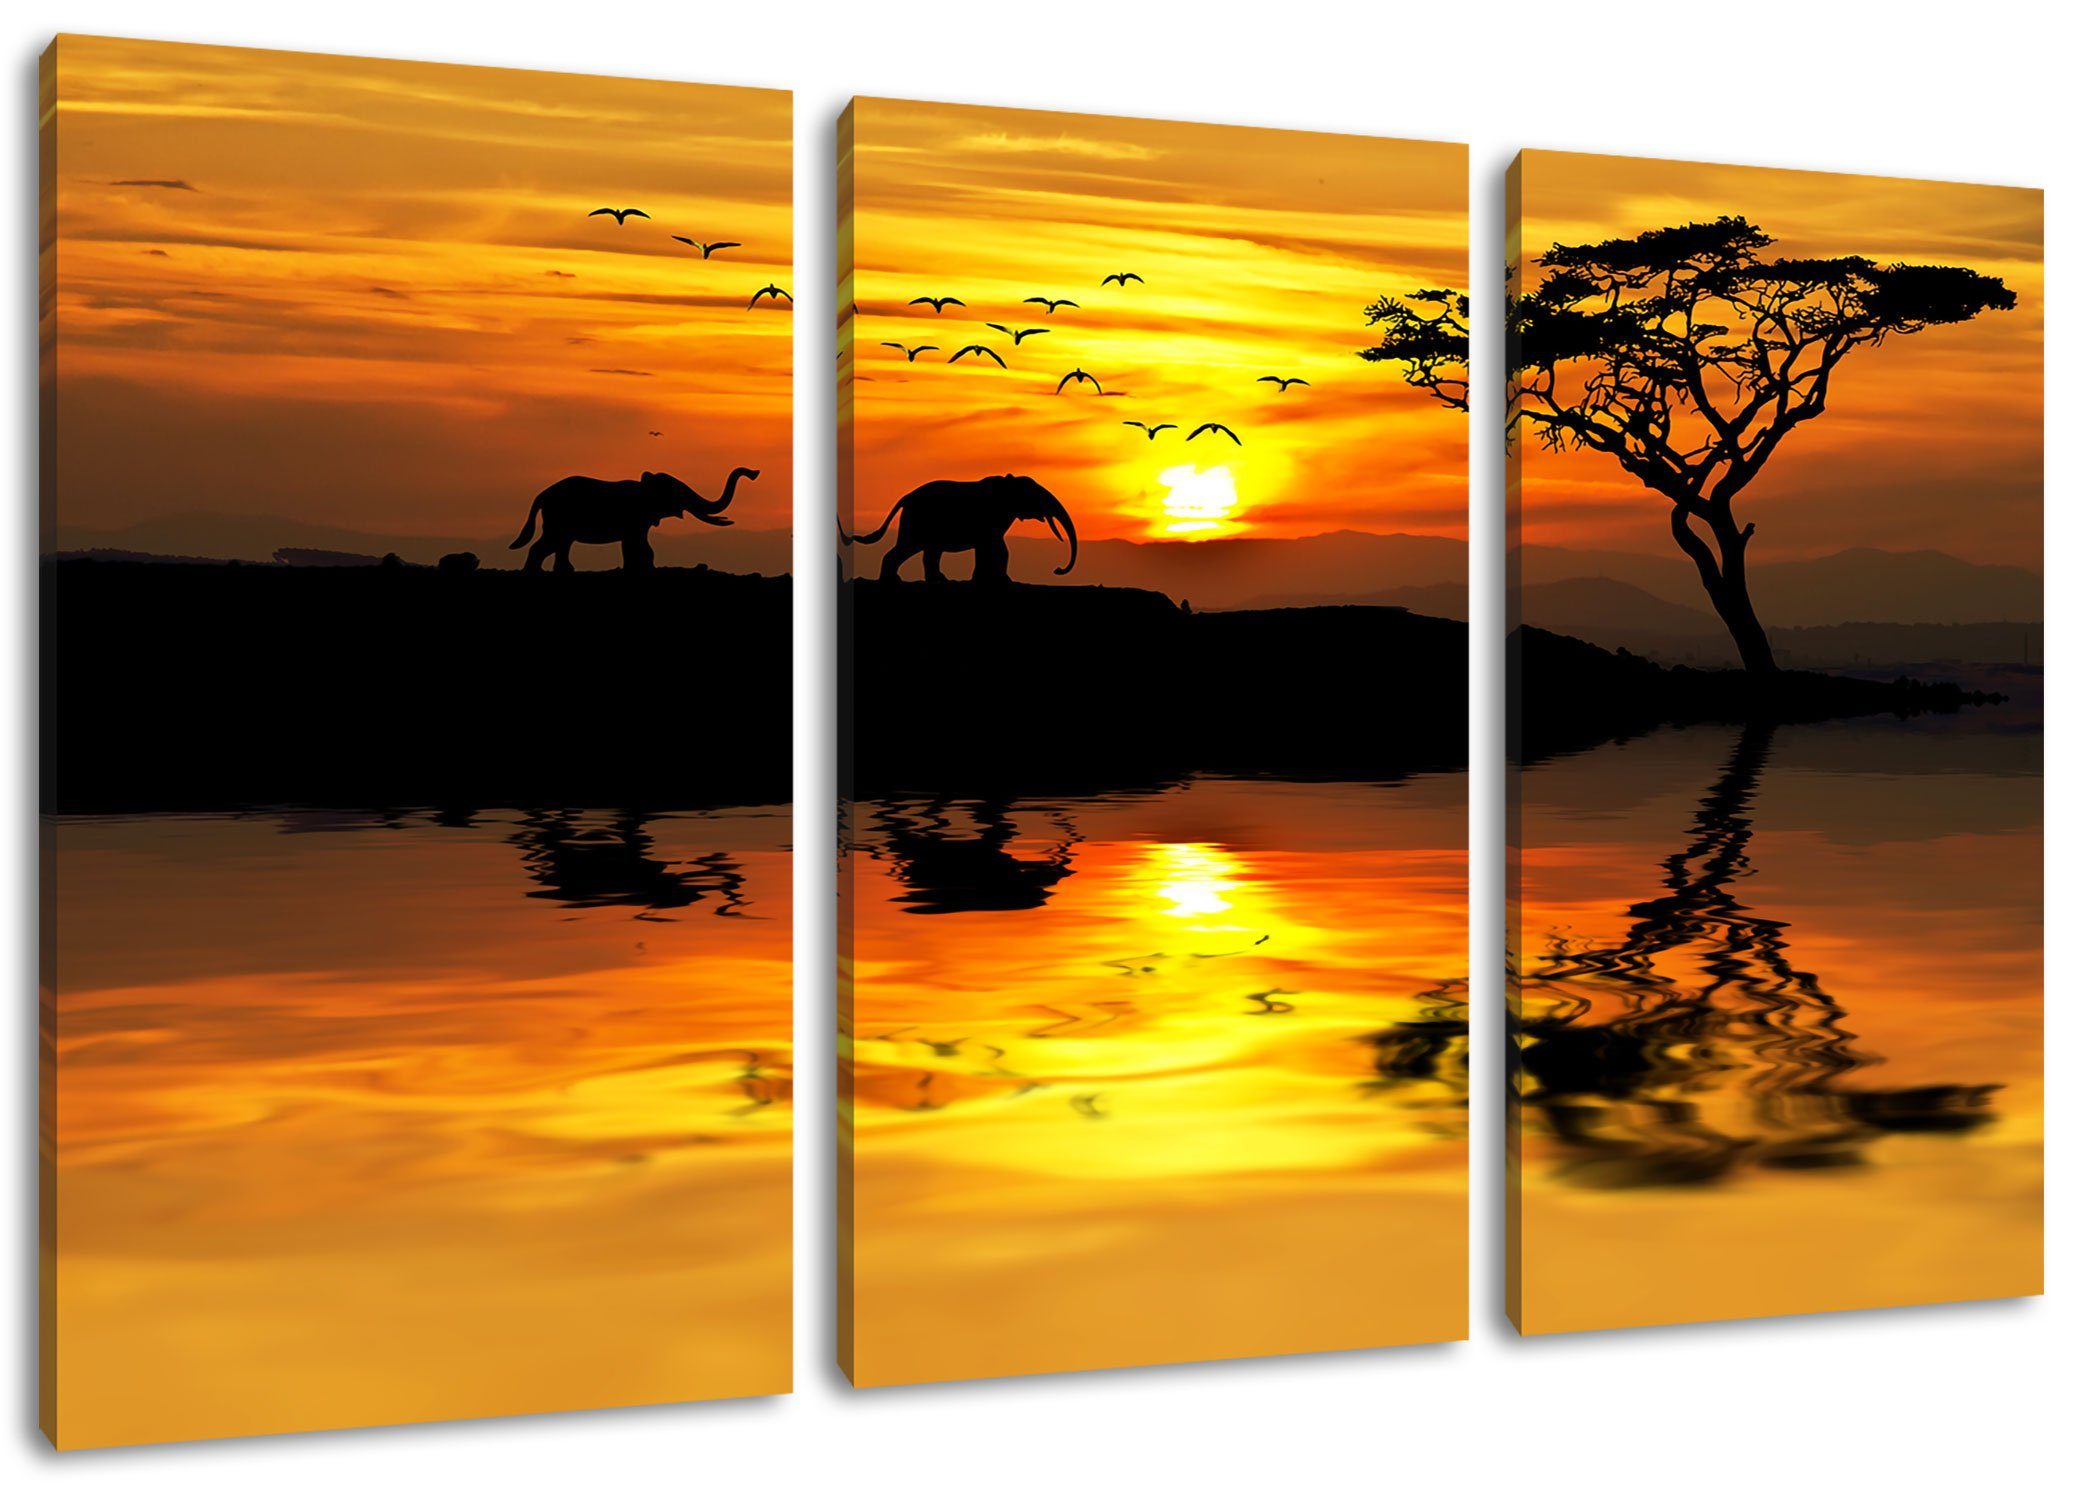 Pixxprint Leinwandbild Elefanten (120x80cm) bespannt, in Elefanten St), Steppe (1 inkl. Afrikanischer Afrikanischer Zackenaufhänger Leinwandbild fertig in 3Teiler Steppe